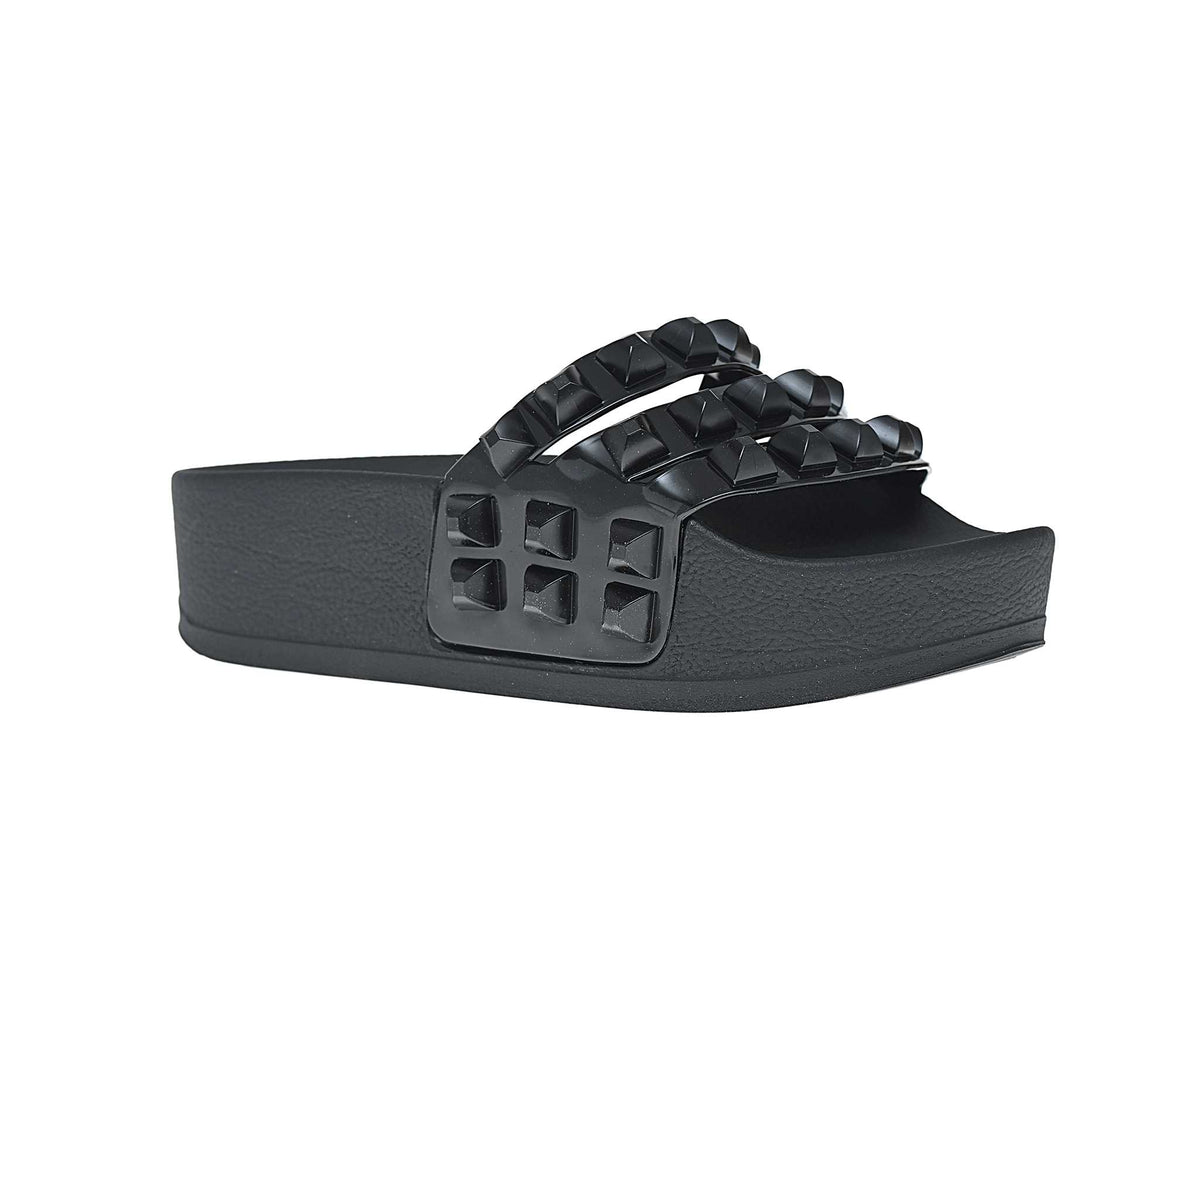 Black platform heels, platform black sandals, jelly slide sandals from carmen sol